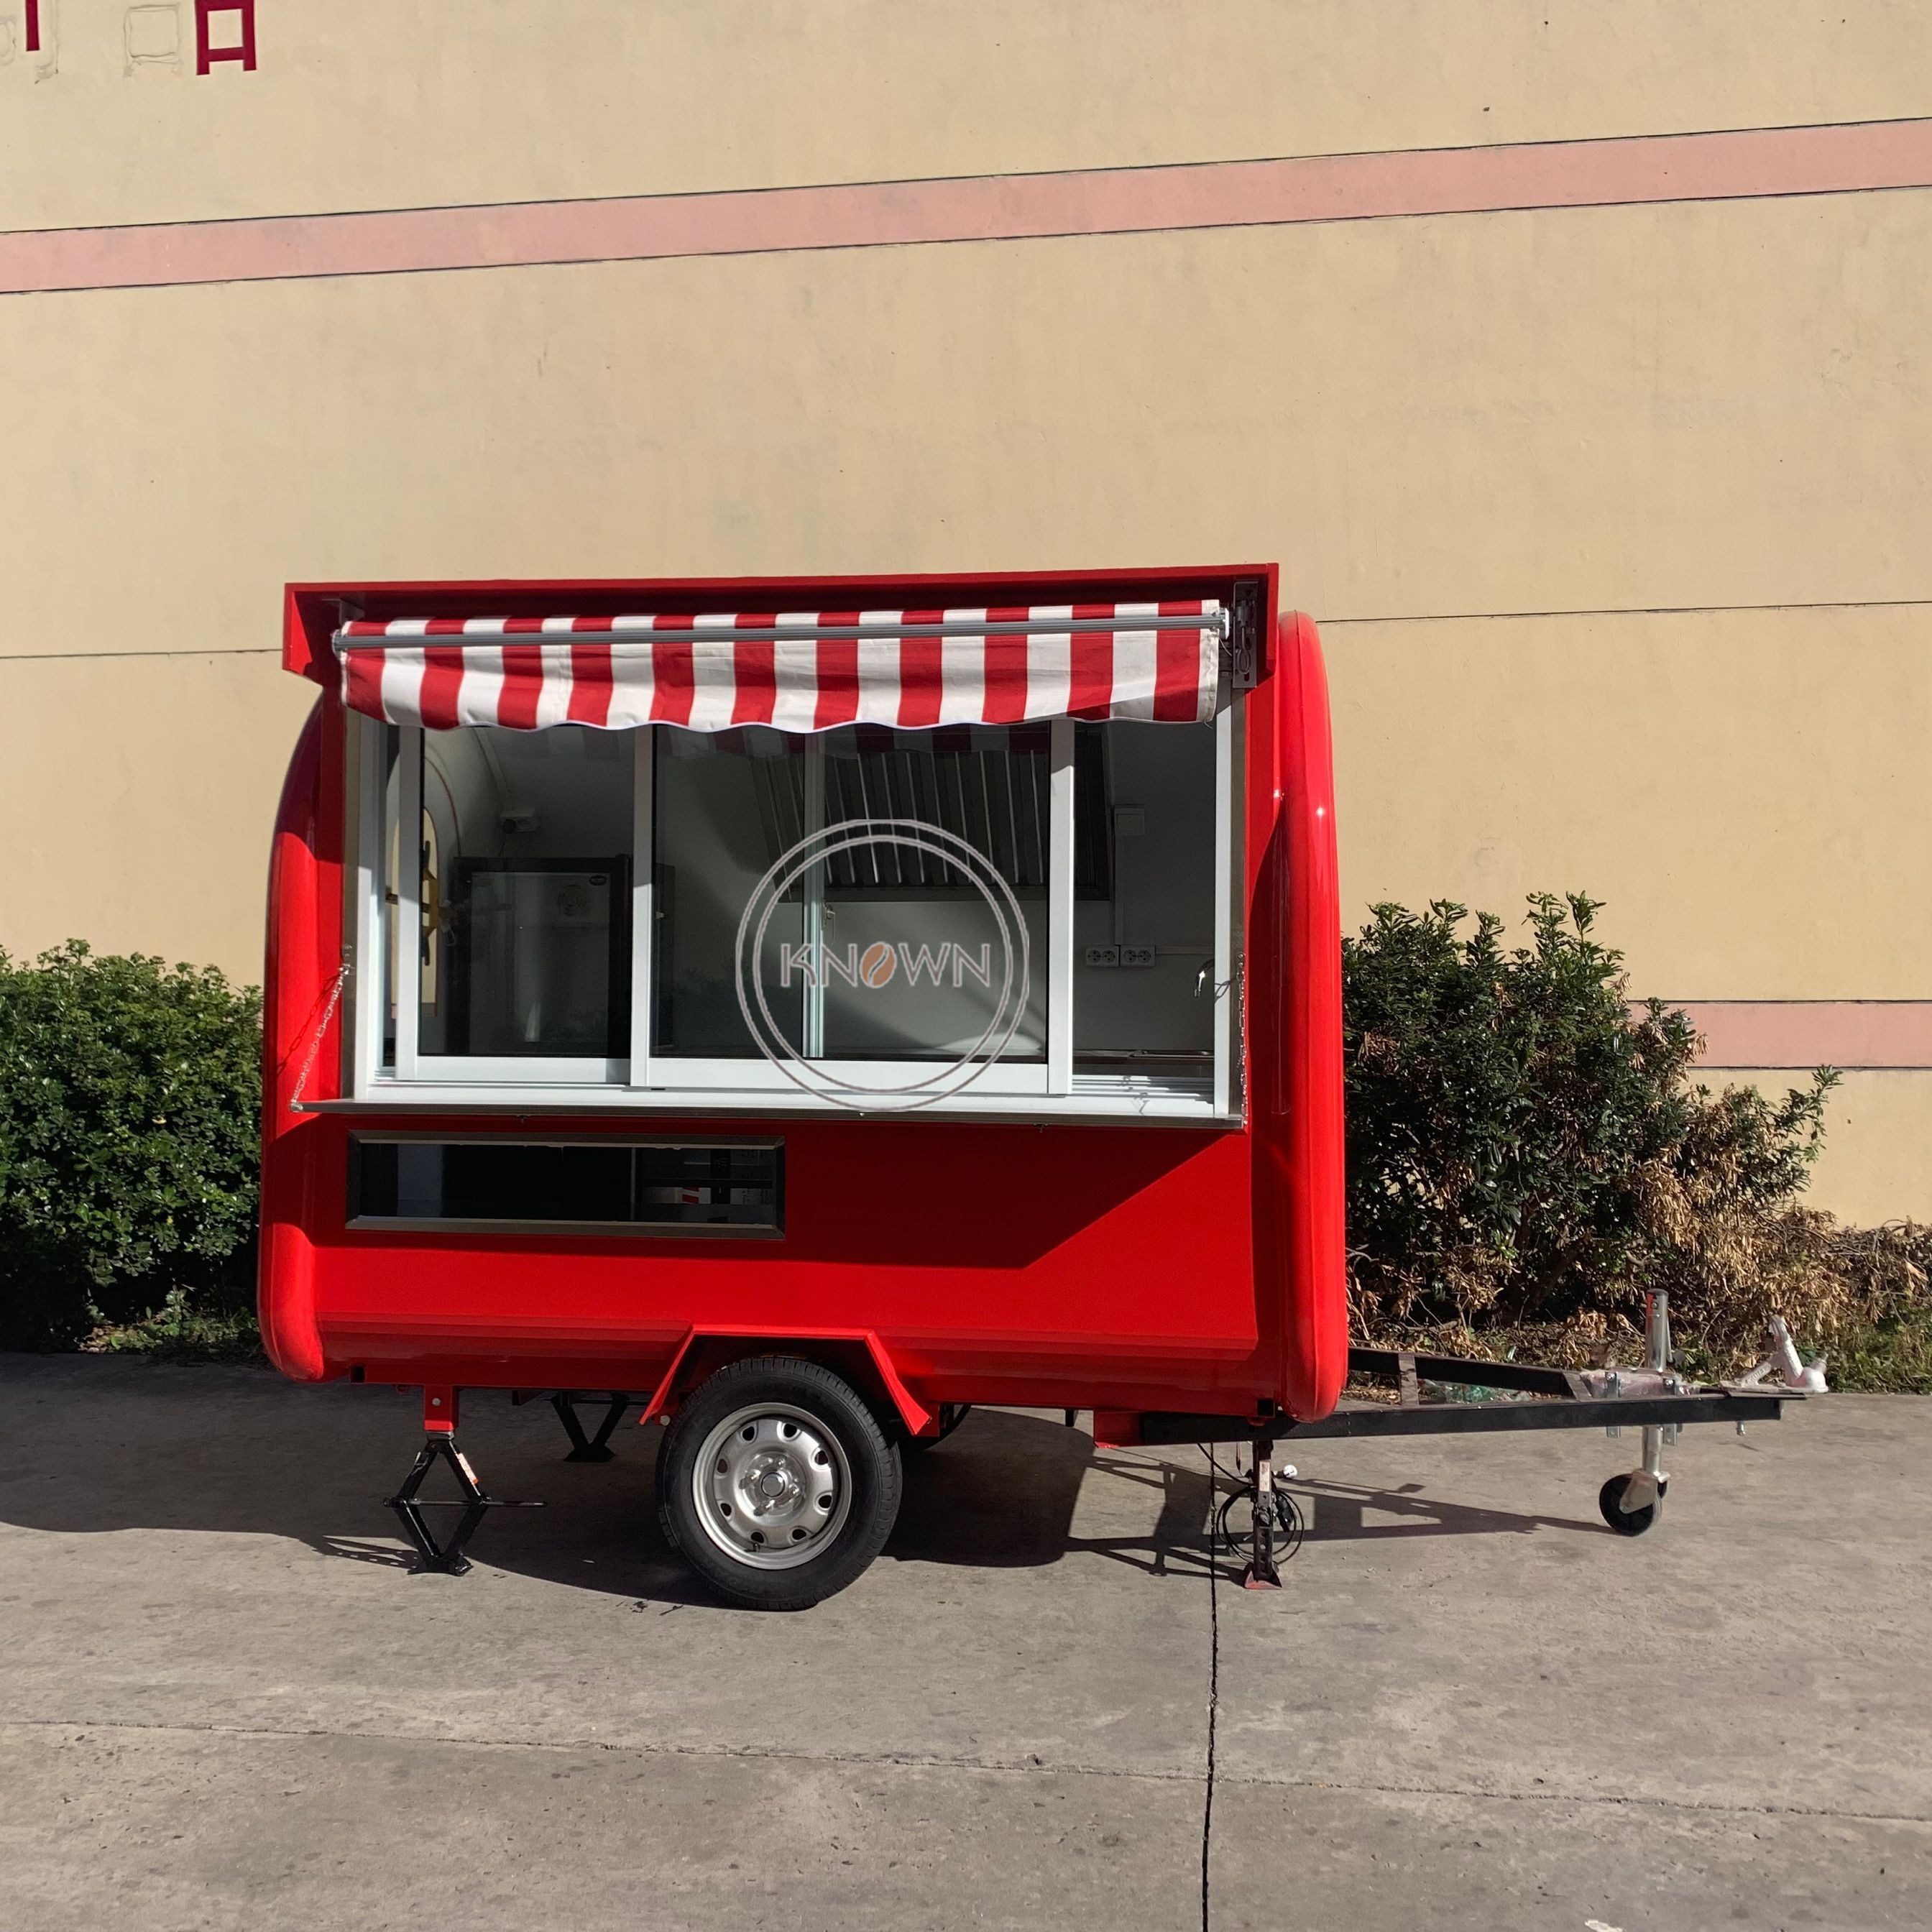 KN-FR-250H Multifunctional Snack Food Cart Manufacturer Fast Food Hotdog Truck Trailer